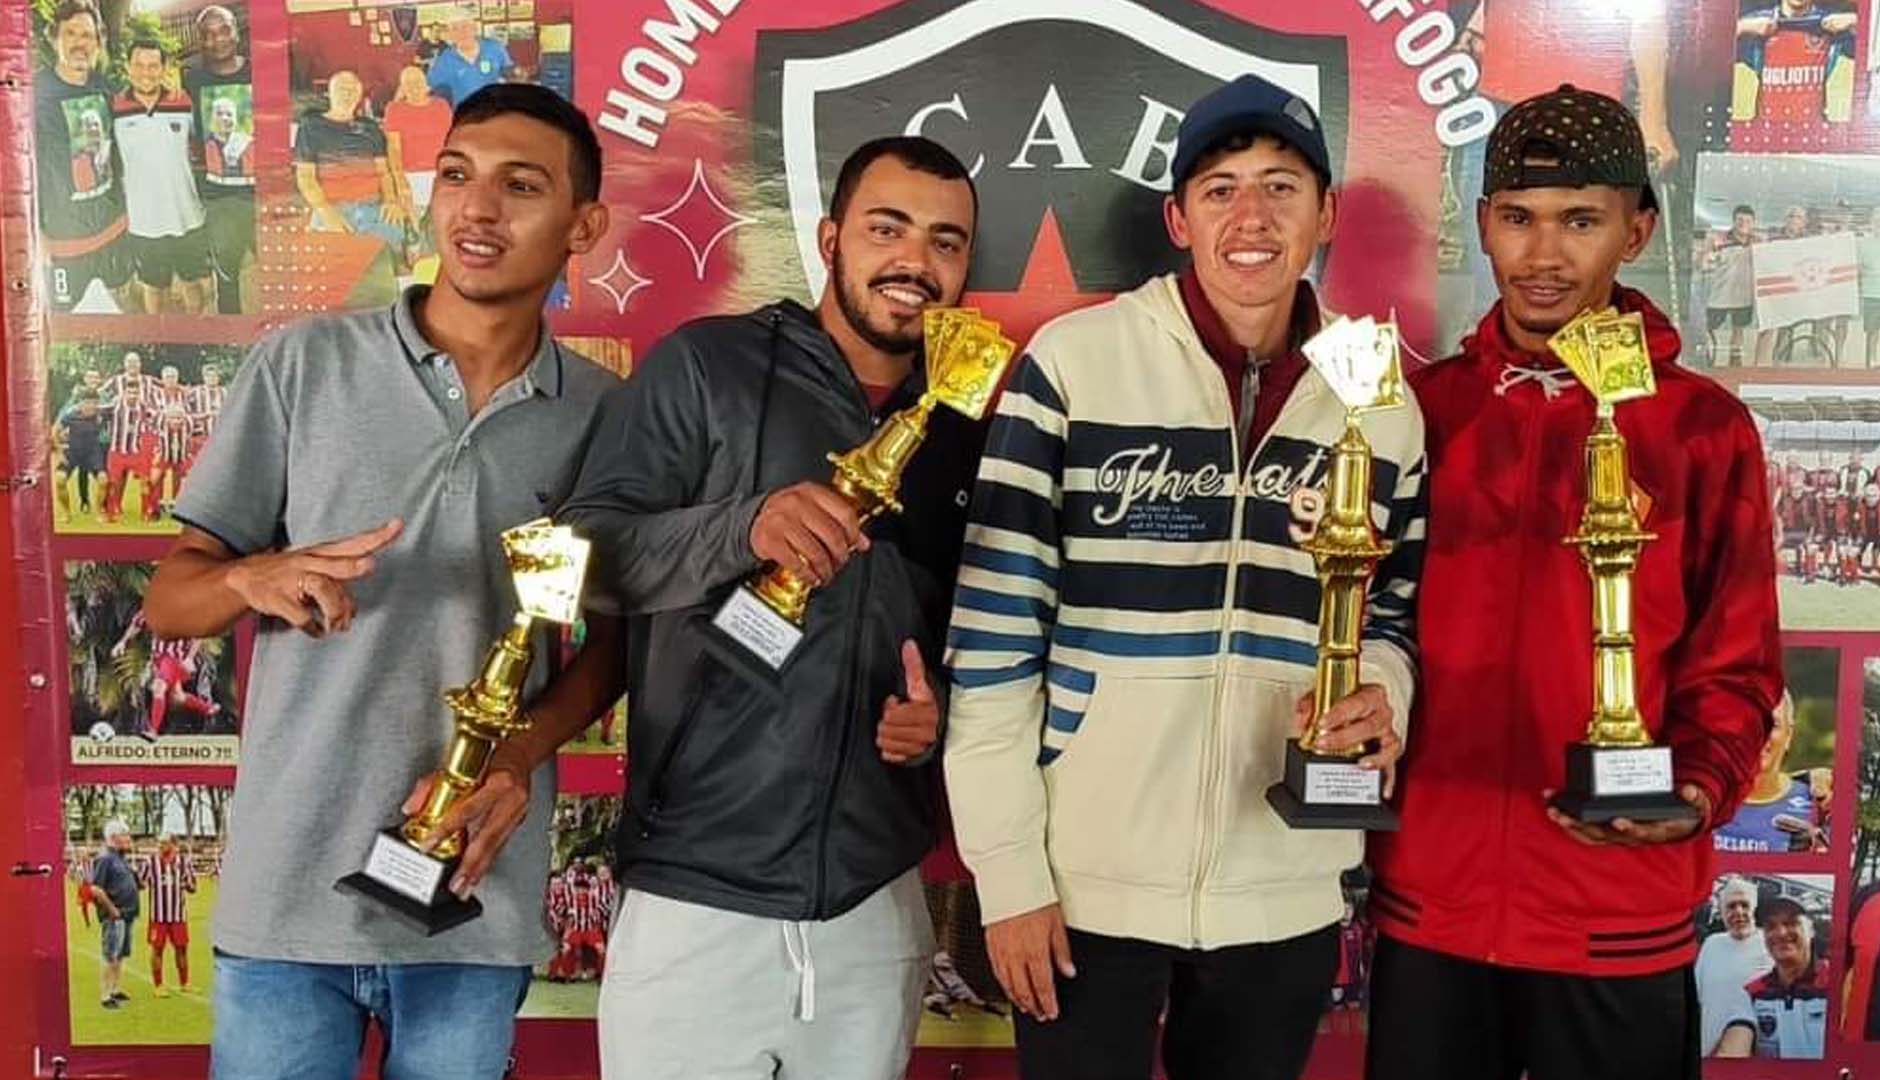 Torneio de truco em Barra Bonita reúne dezenas de duplas em competição acirrada